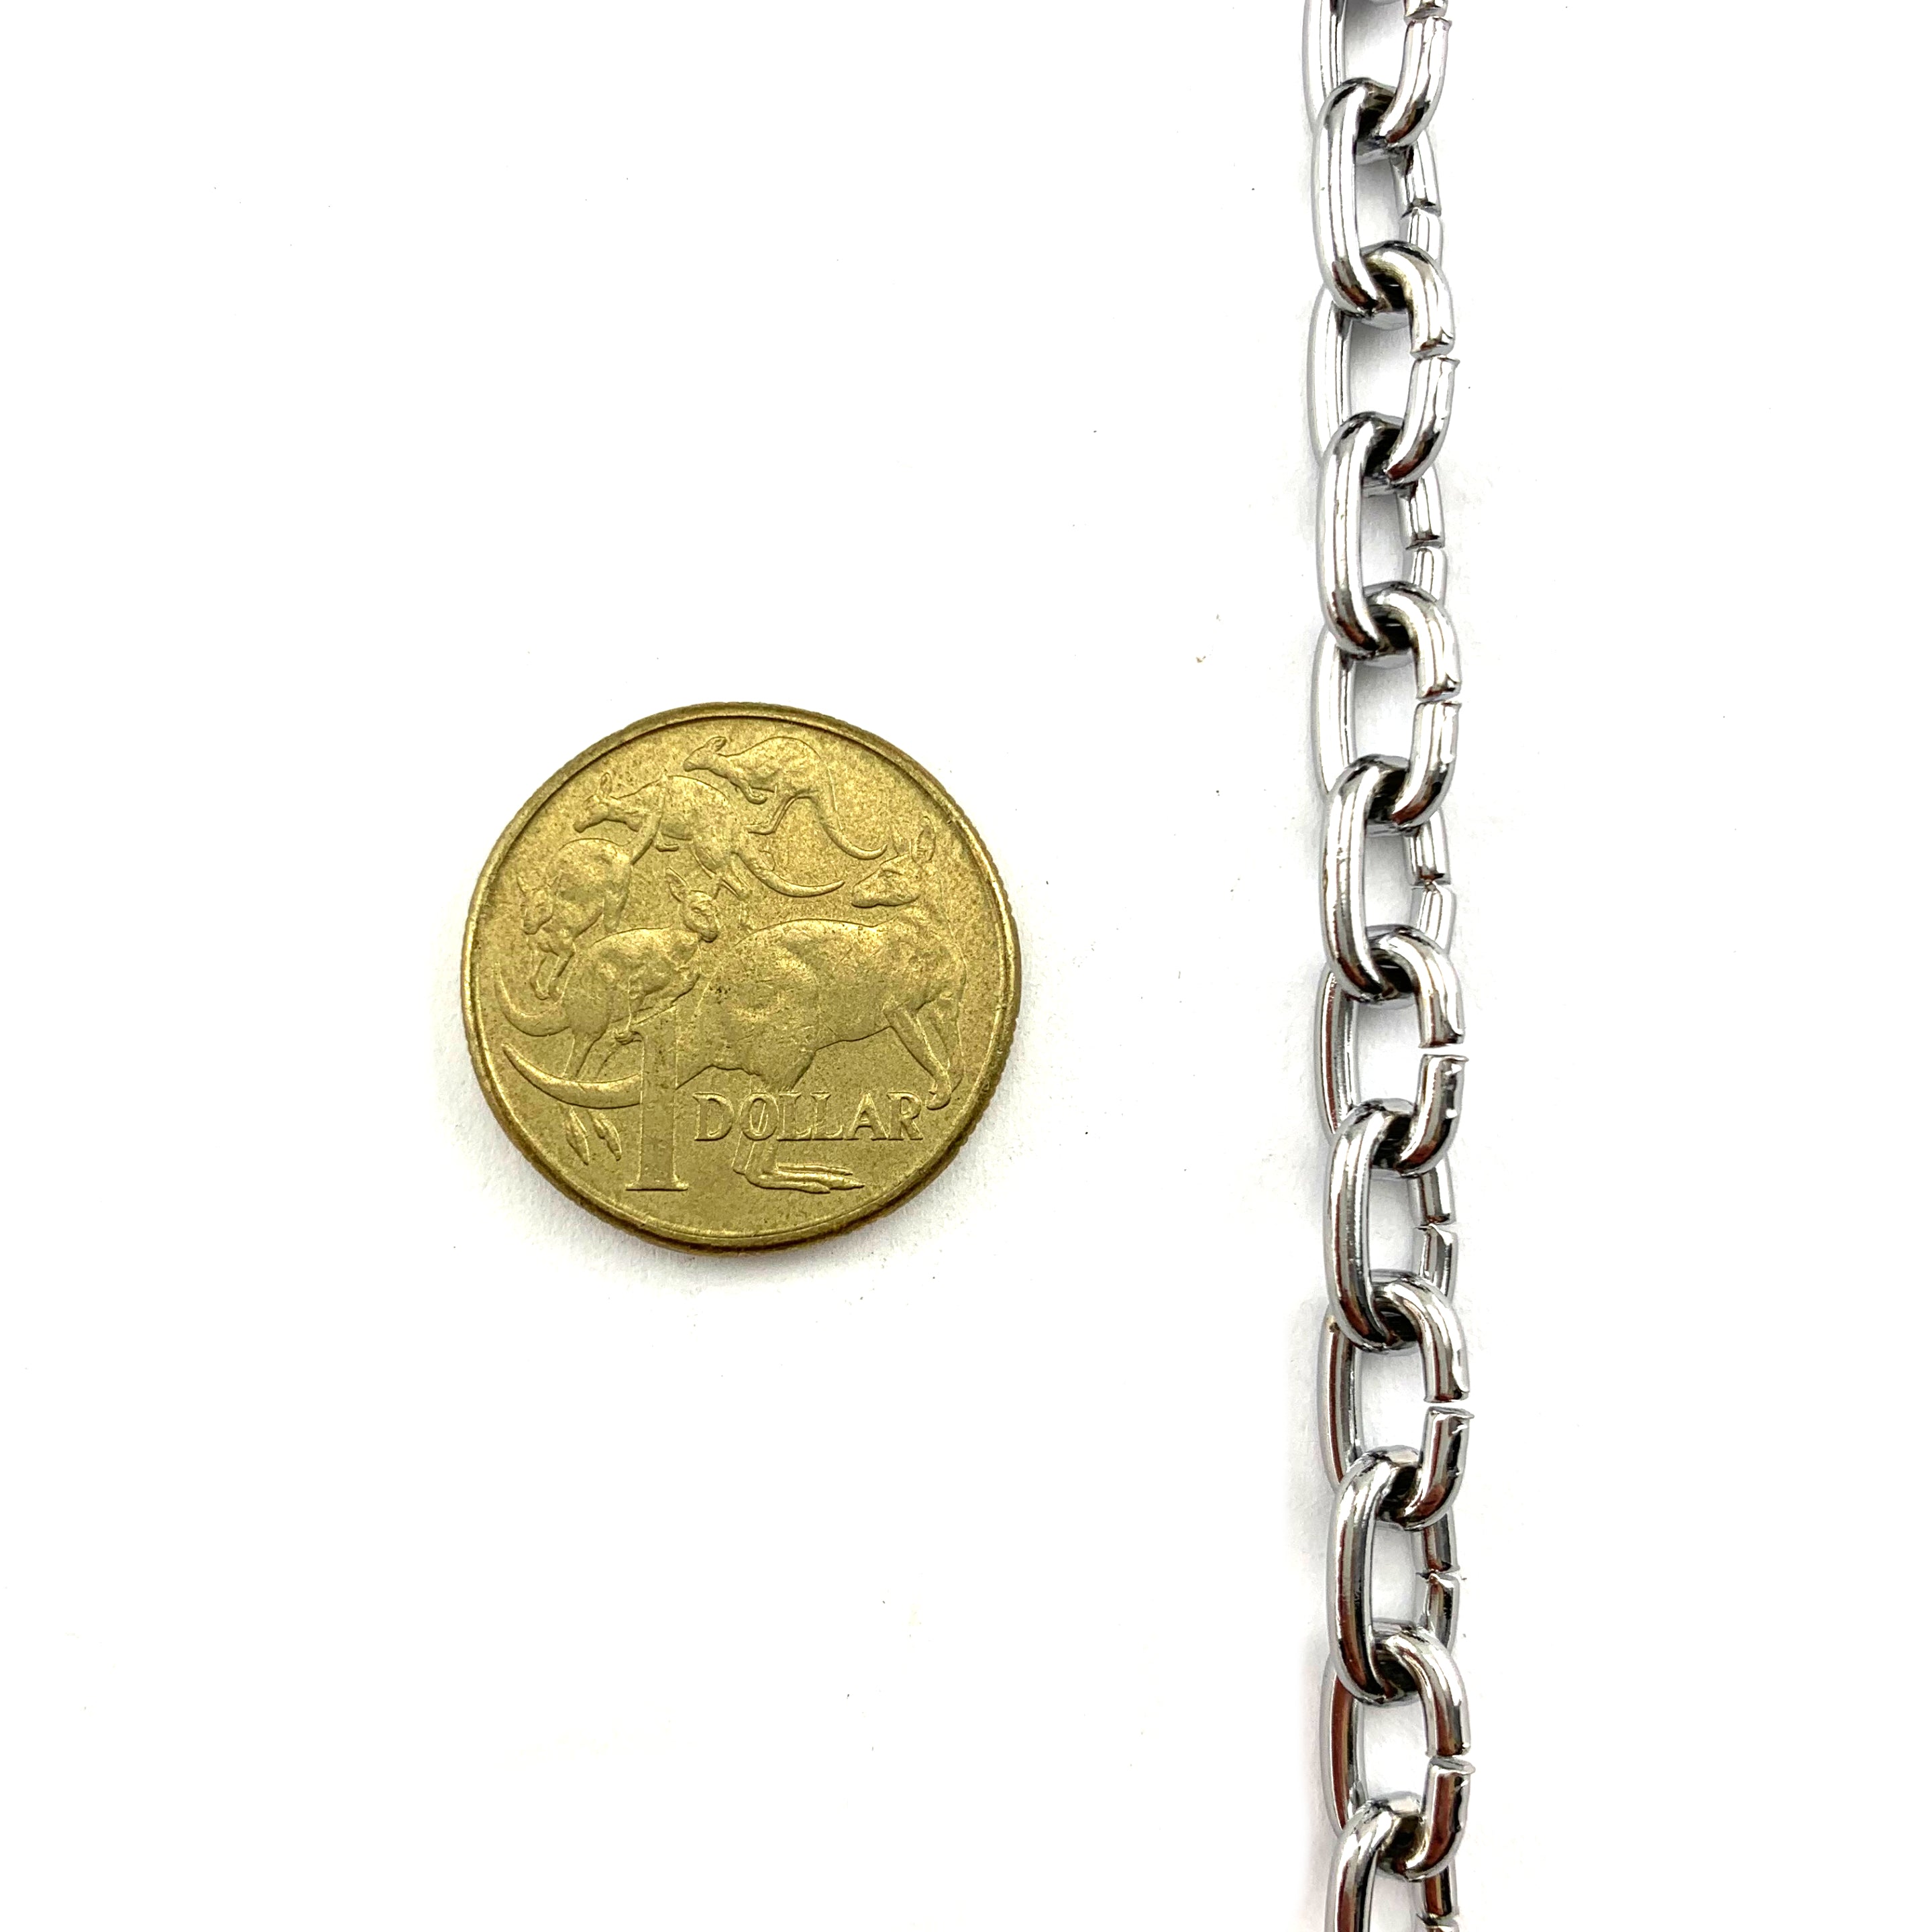 Chrome plated mini chain, 2mm. Melbourne, Australia.